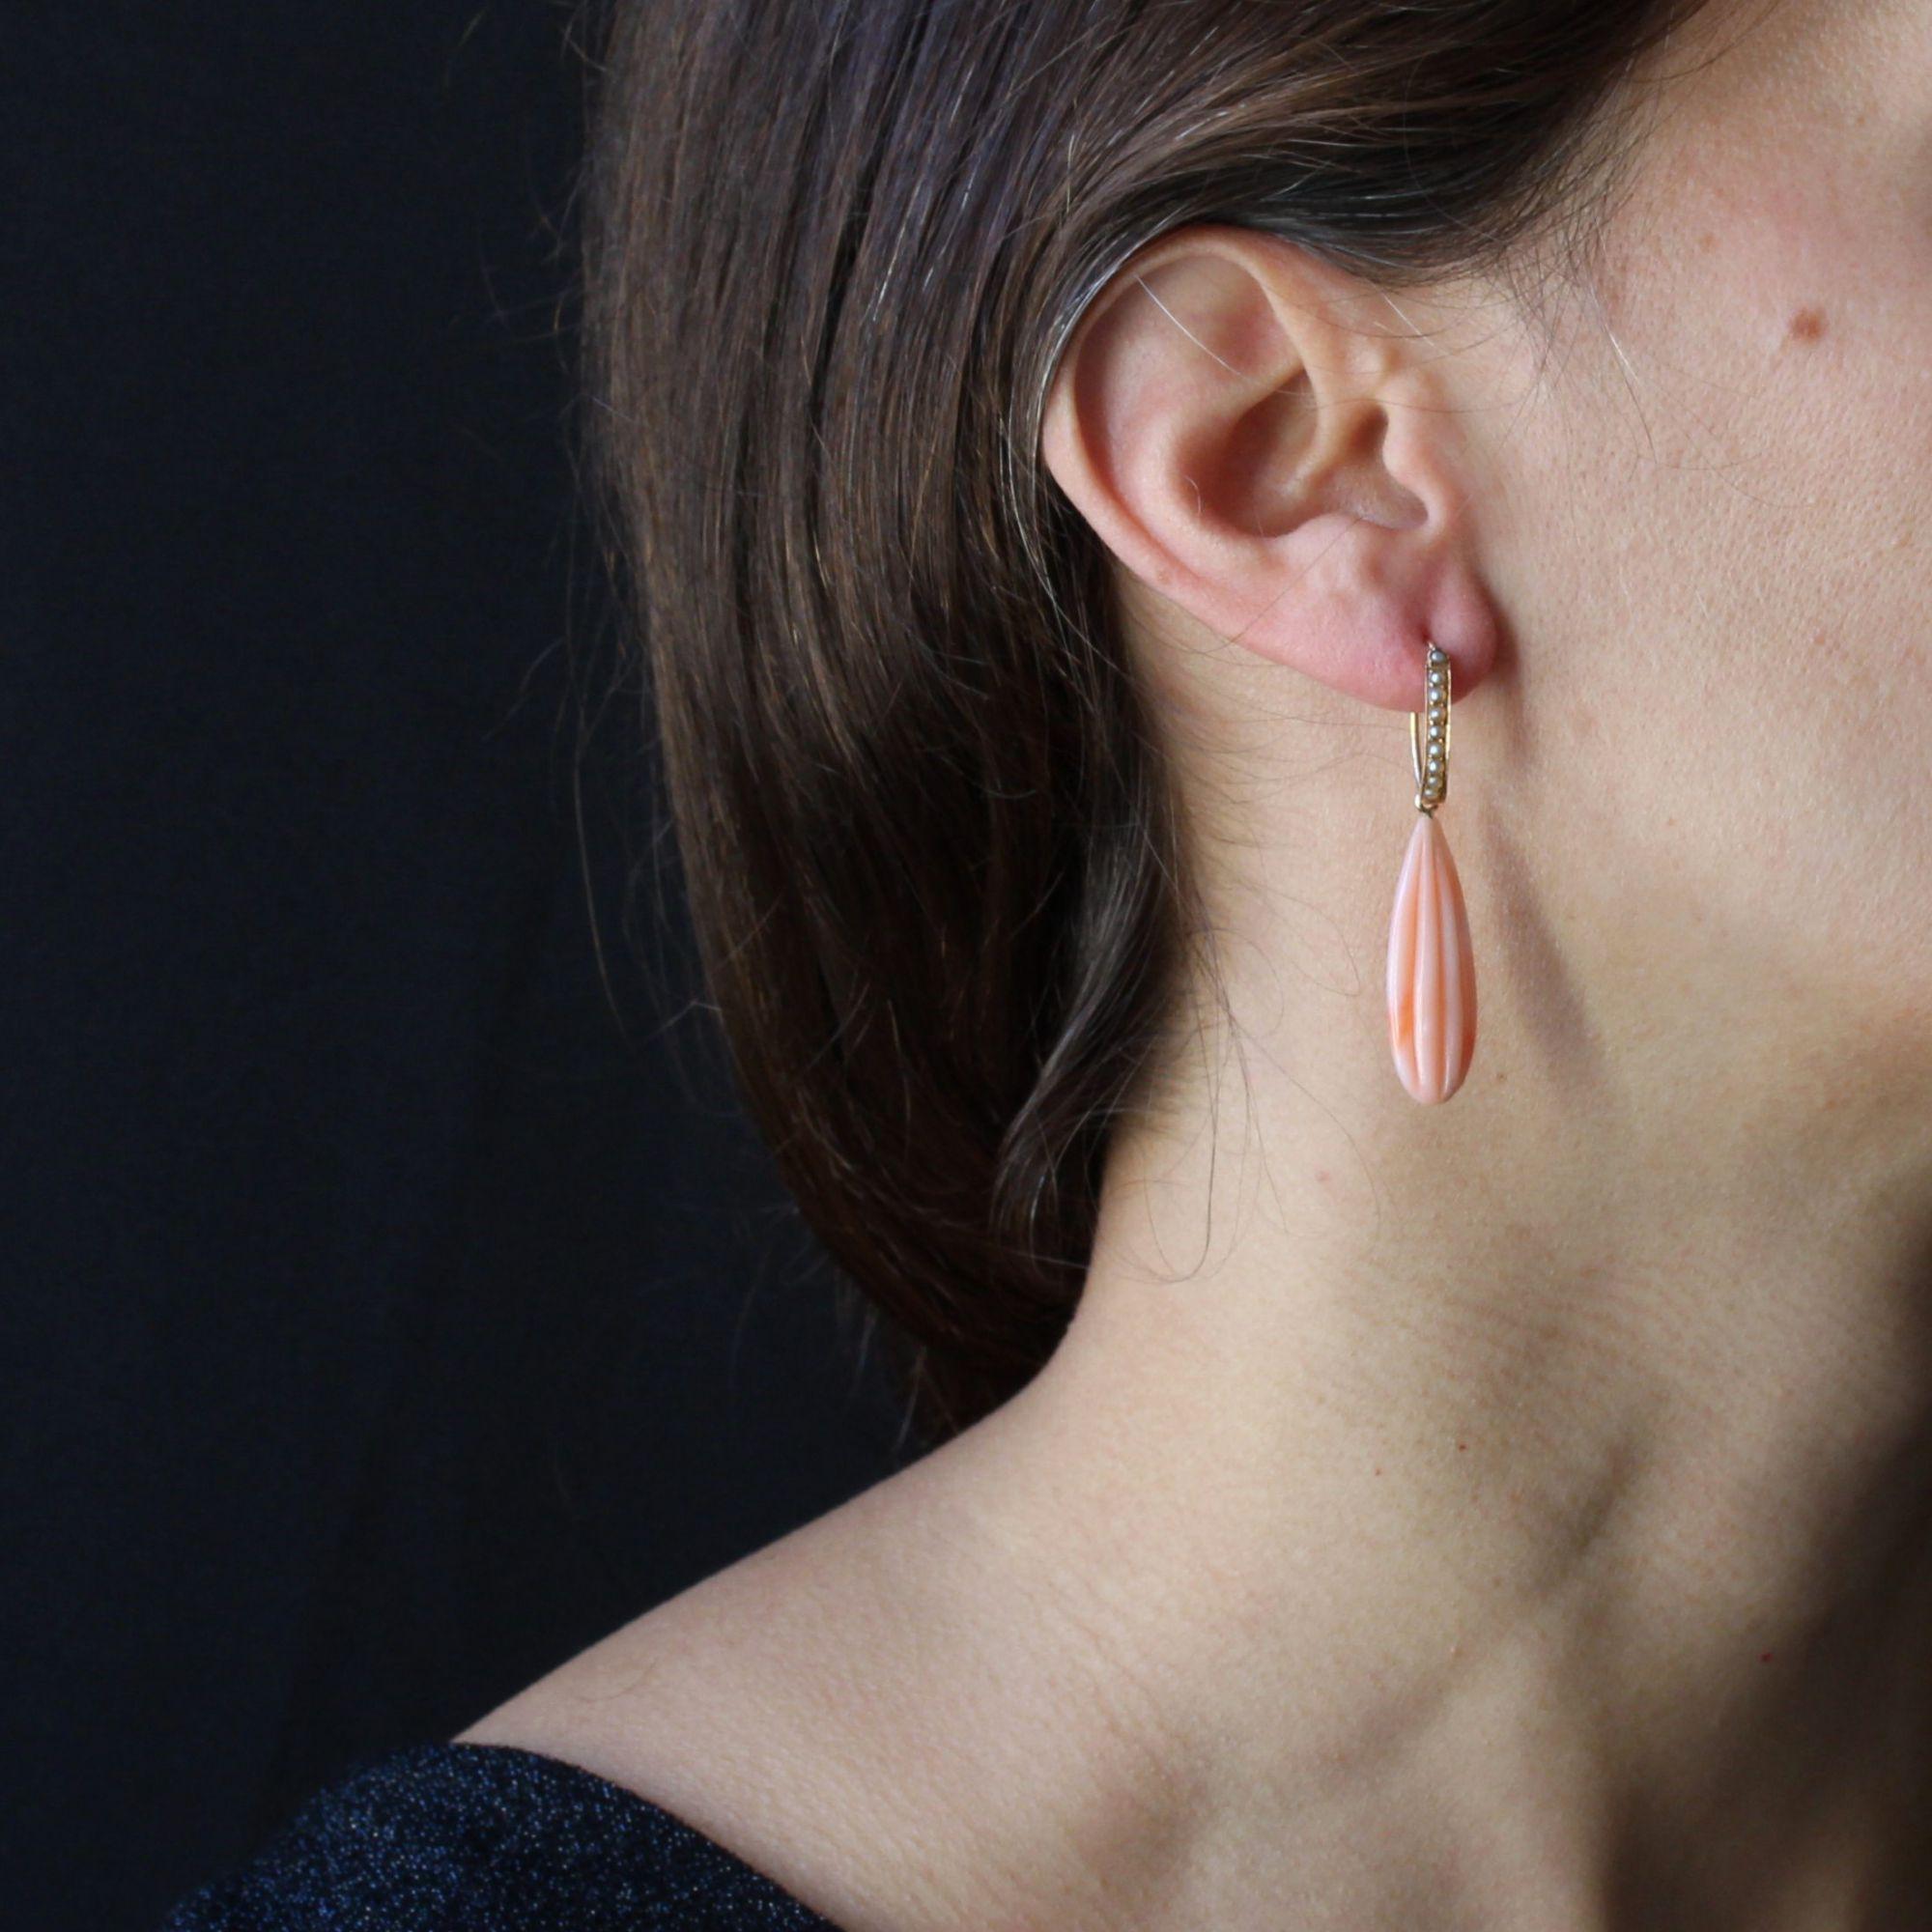 Für gepiercte Ohren.
Ohrring aus 18 Karat Roségold.
Prächtige antike Anhänger Ohrringe, sie sind auf dem hohen Teil eines ovalen Rings, dessen Vorderseite ist mit natürlichen Perlen besetzt gebildet. Die Aufhängung erfolgt auf der Rückseite.